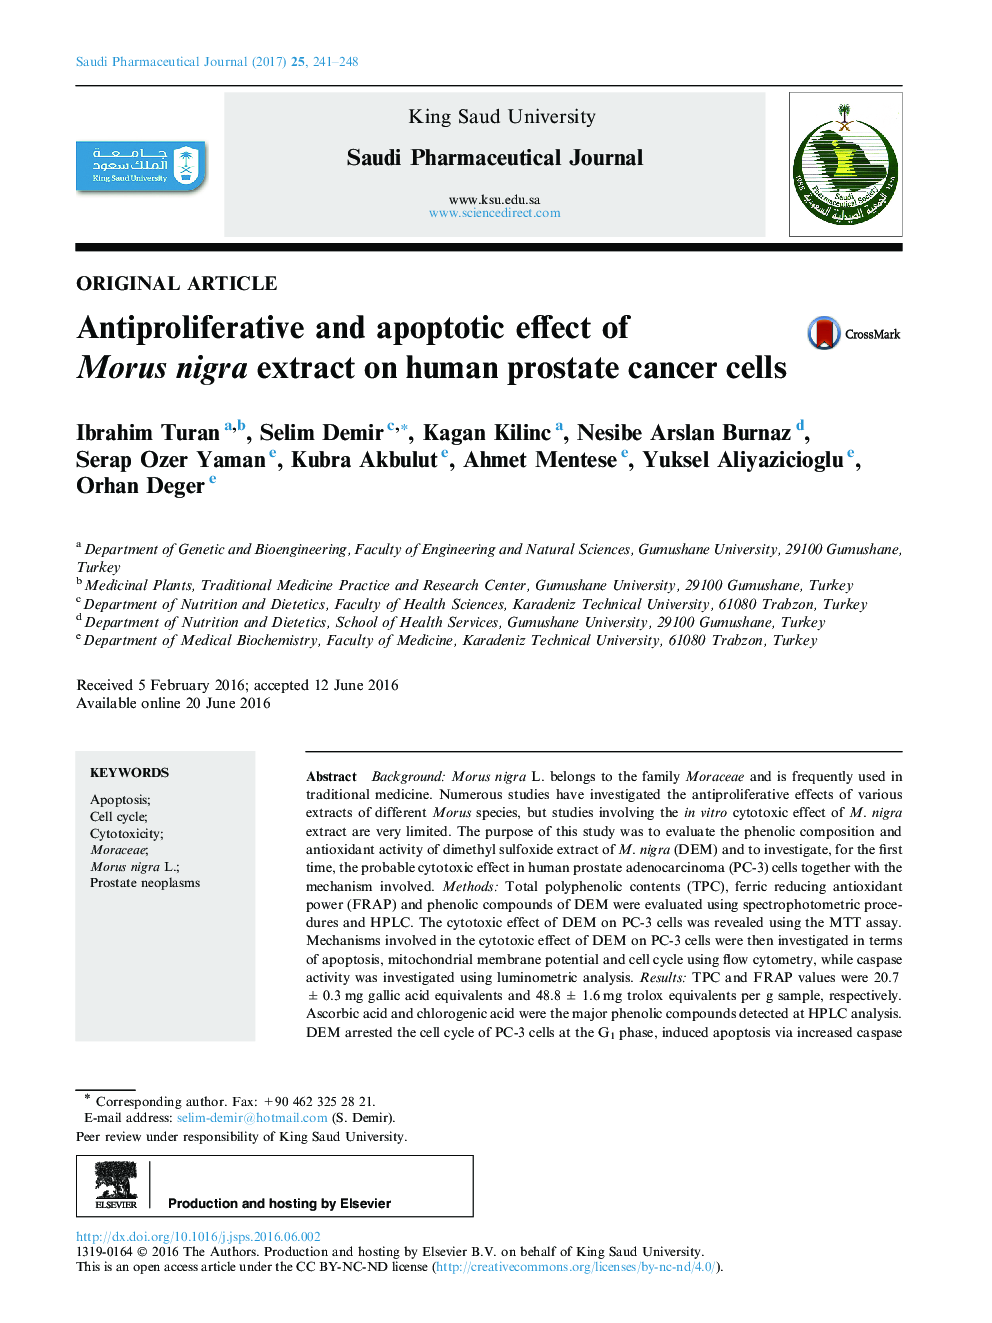 اثر ضد انعقادی و آپوپتوزی عصاره موروس نگار در سلول های سرطانی پروستات انسان 